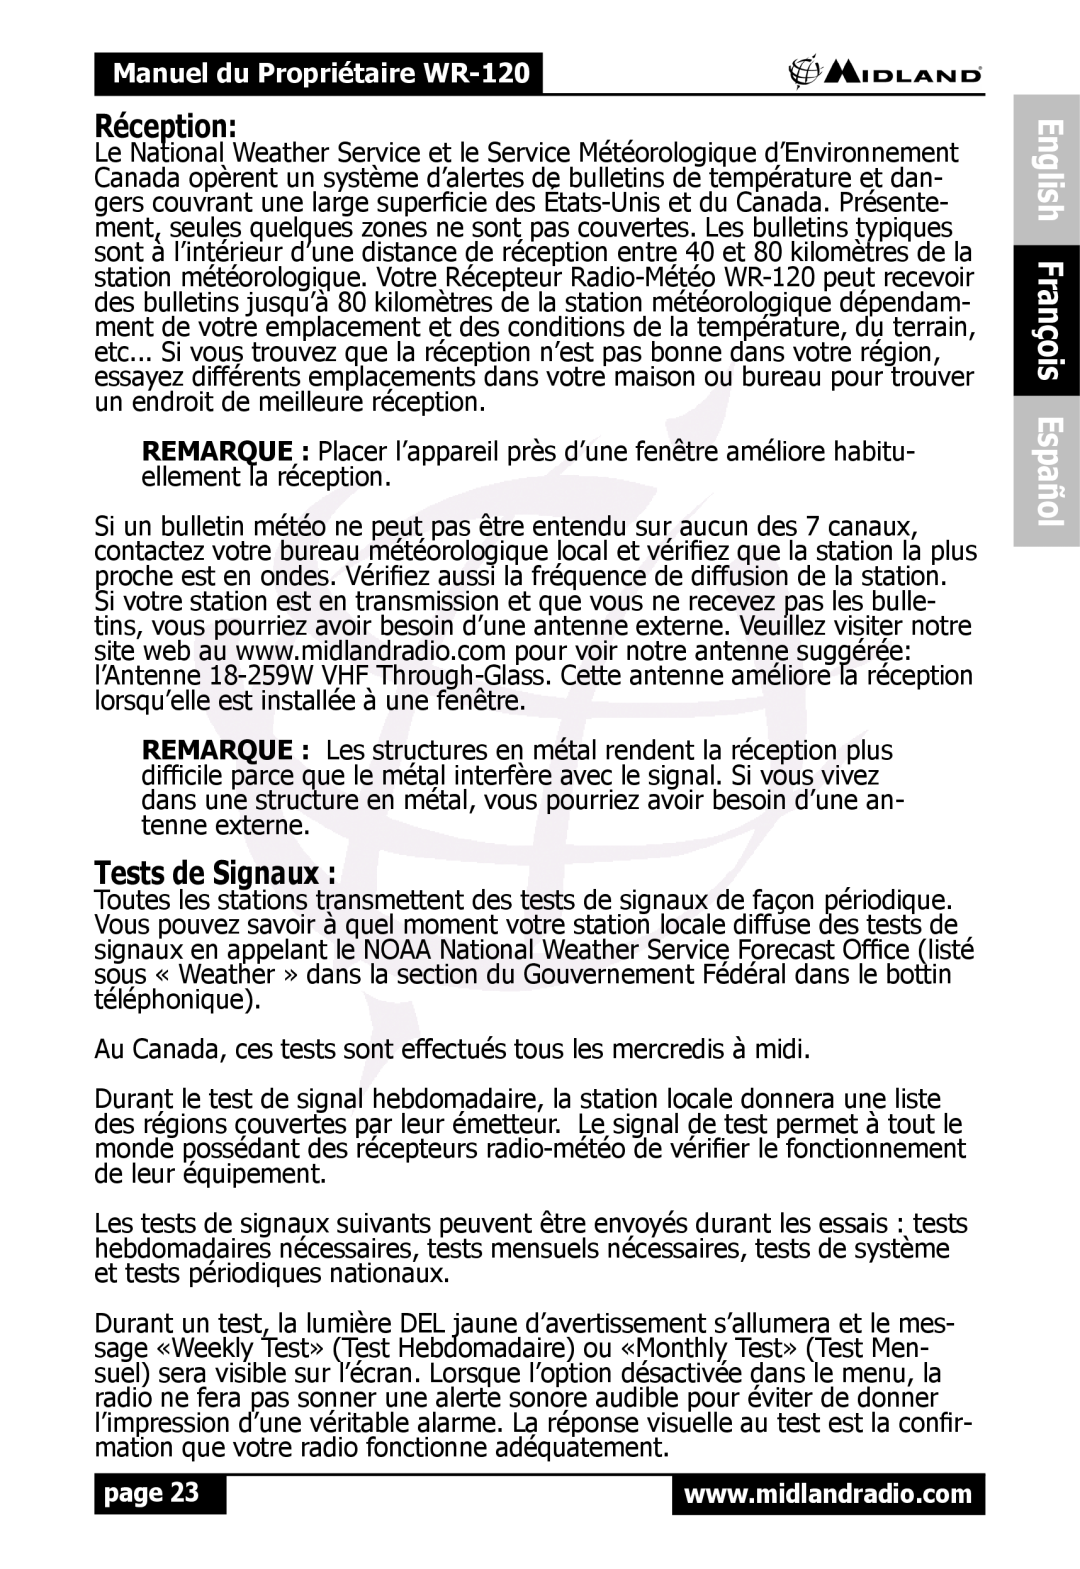 Midland Radio WR120 owner manual Réception, Tests de Signaux, English François Español, Manuel du Propriétaire WR-120, page 